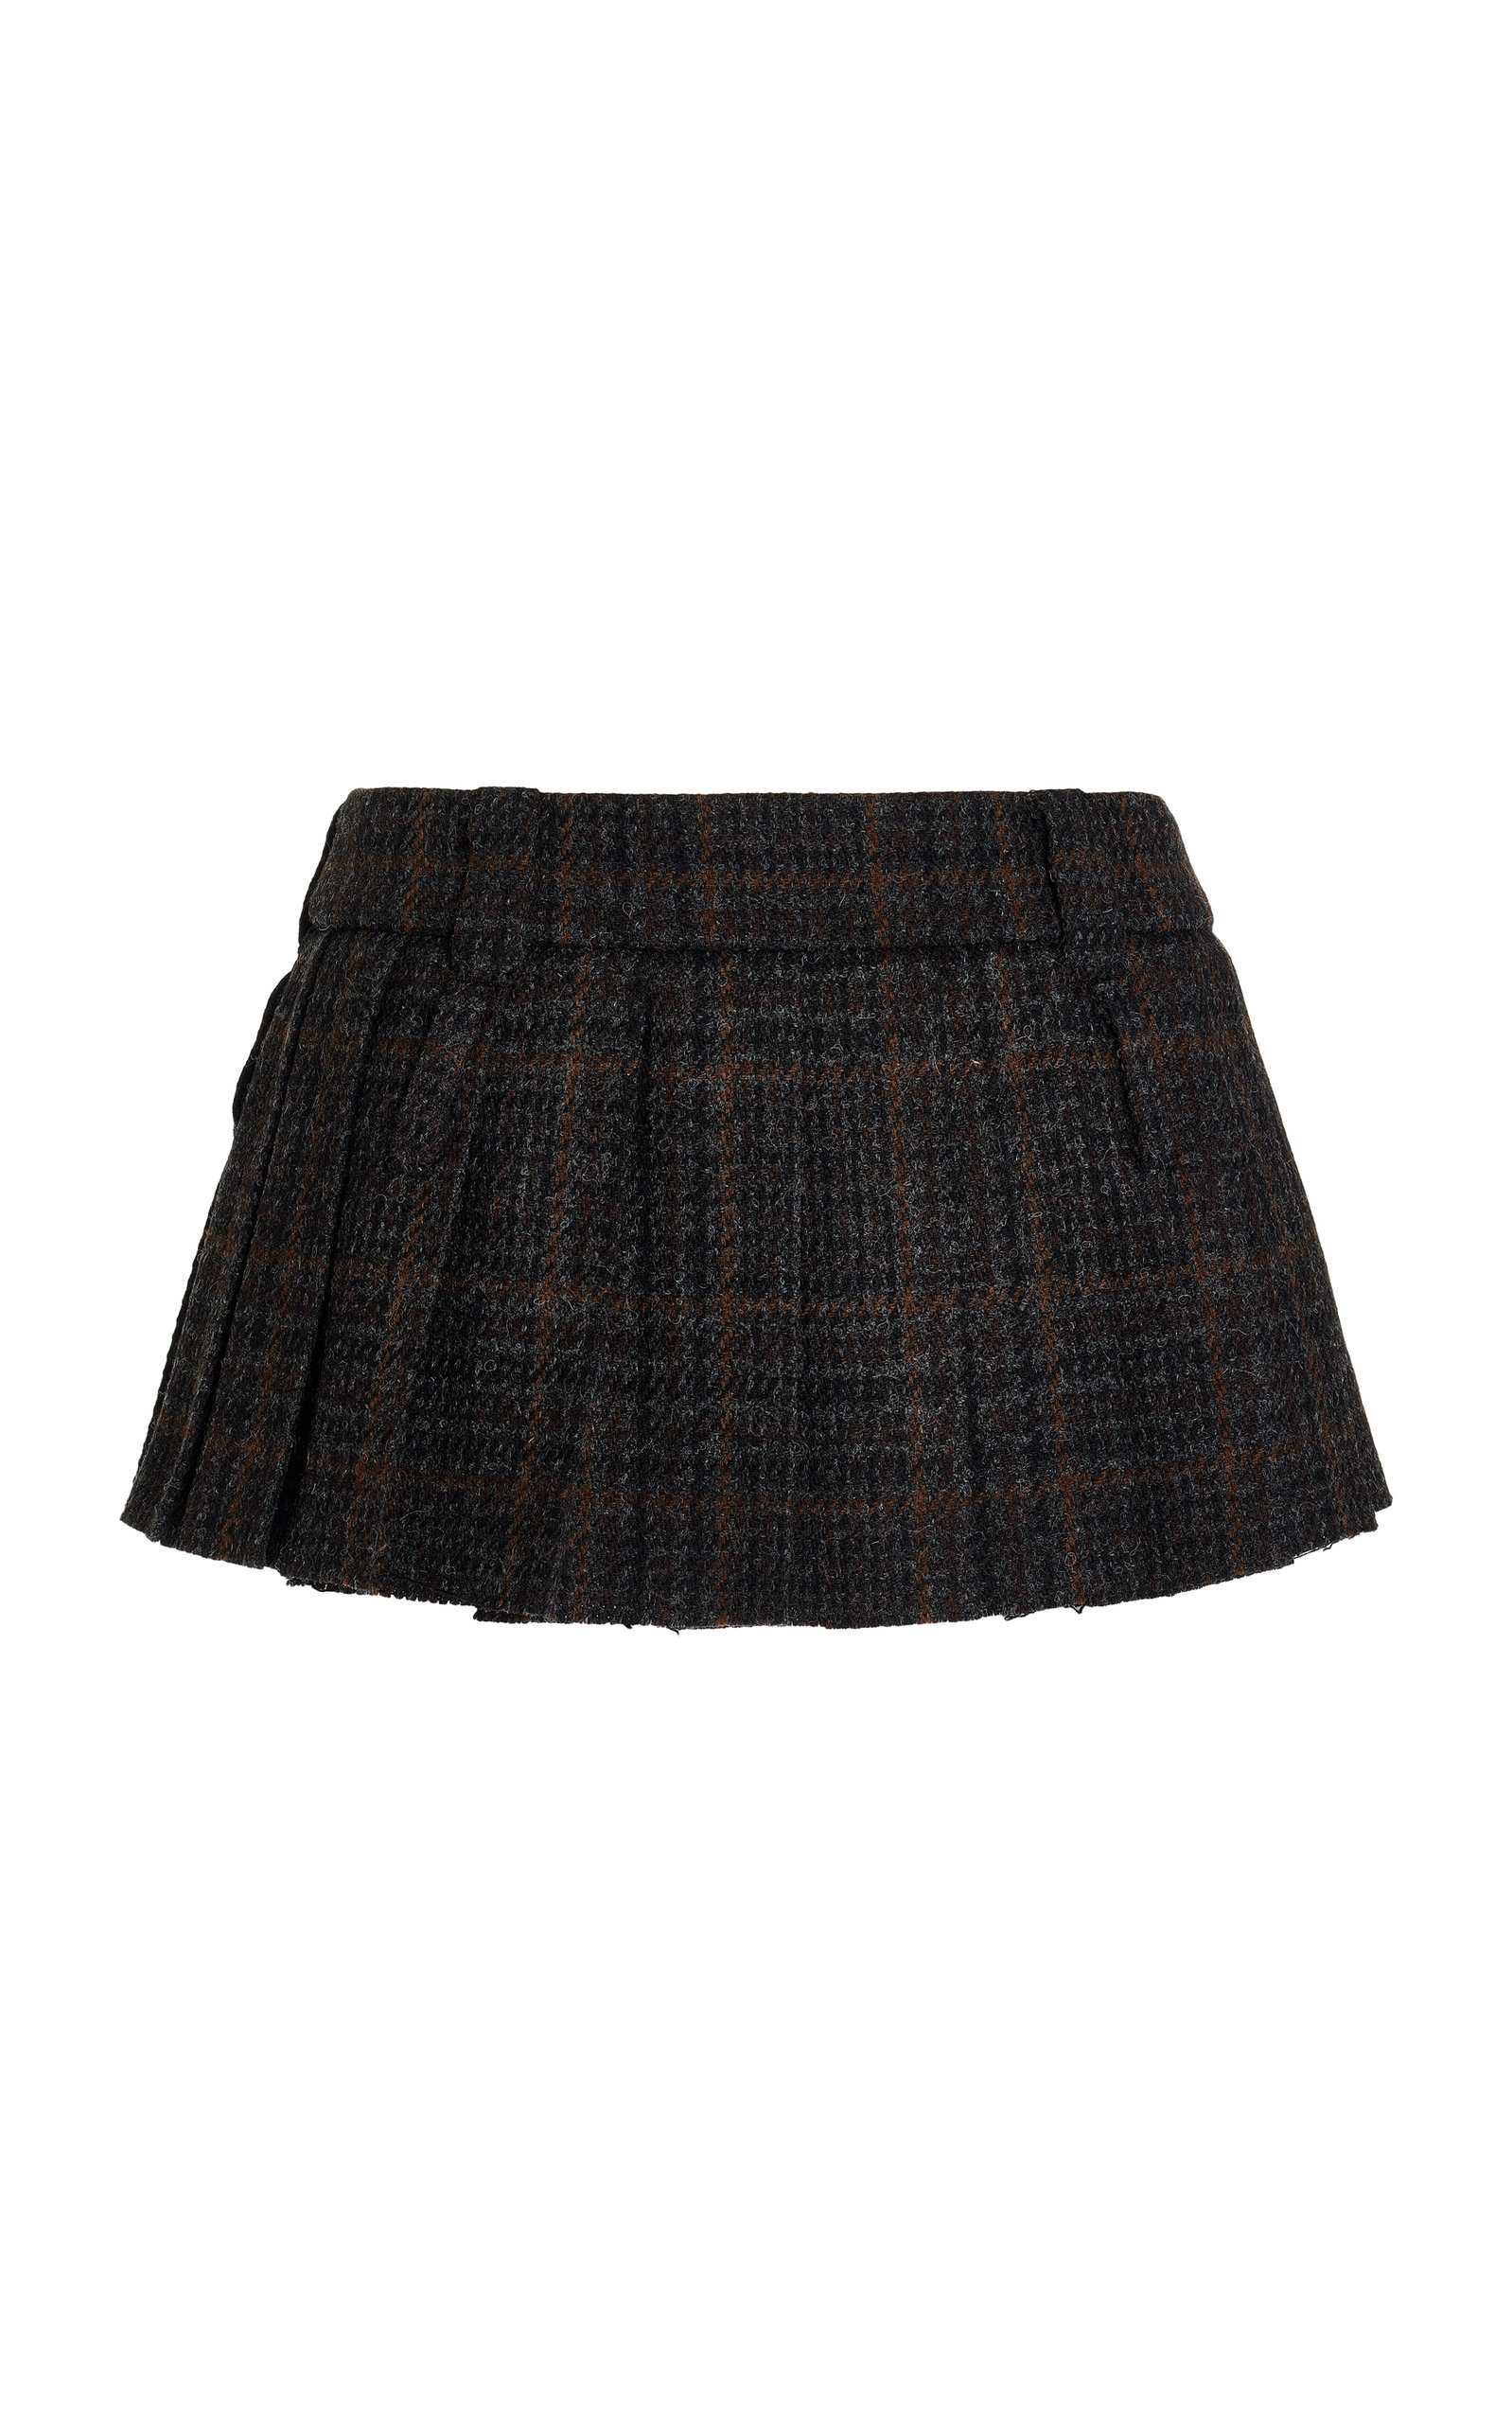 Miu Miu - Plaid Mini Skirt - Plaid - IT 44 - Moda Operandi